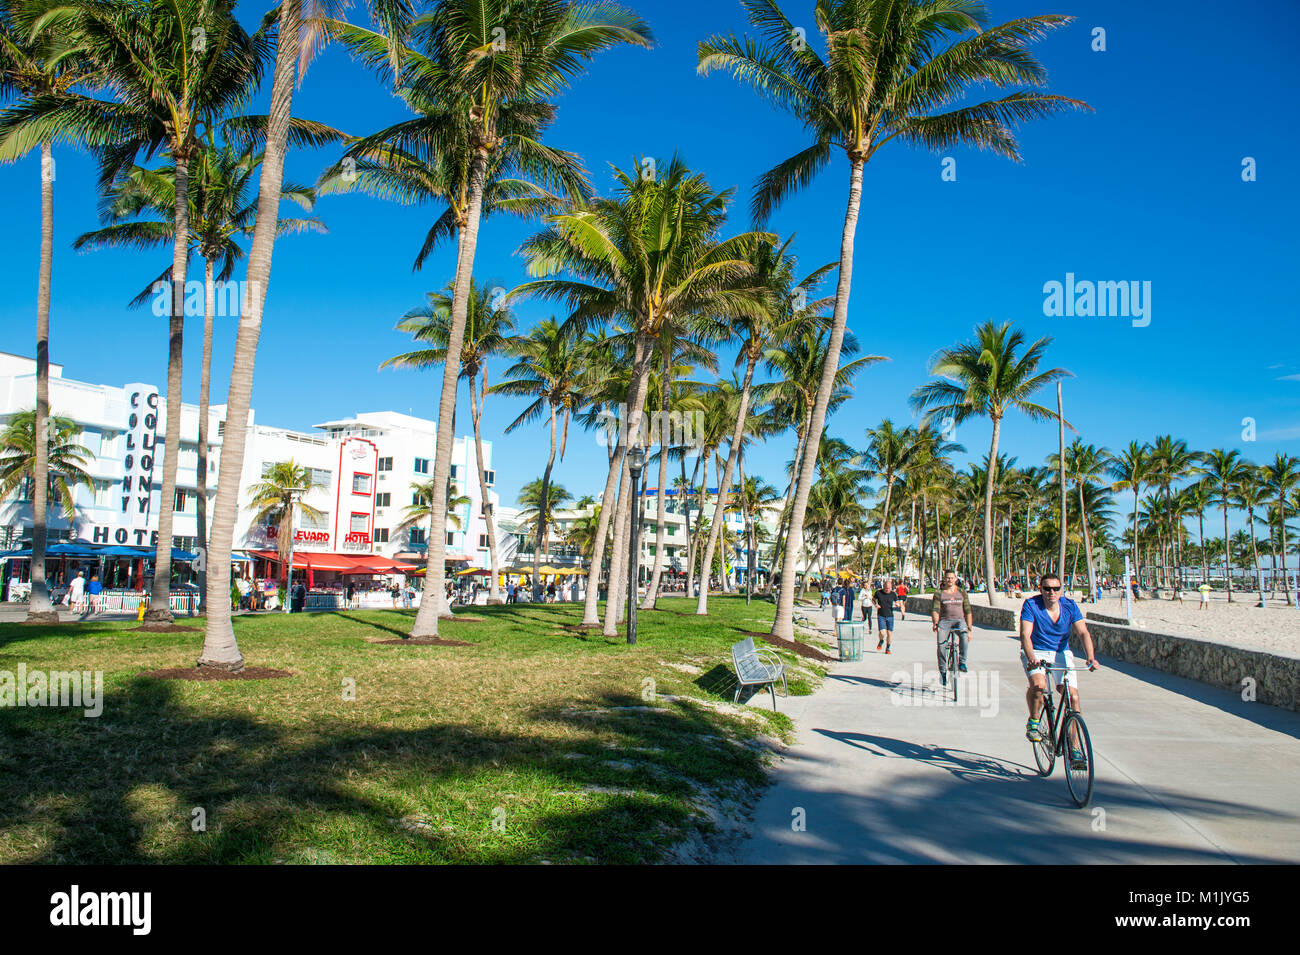 MIAMI - Diciembre 27, 2017: Los ciclistas y corredores compartir la mañana en la playa paseo marítimo Promenade en Lummus Park en South Beach. Foto de stock